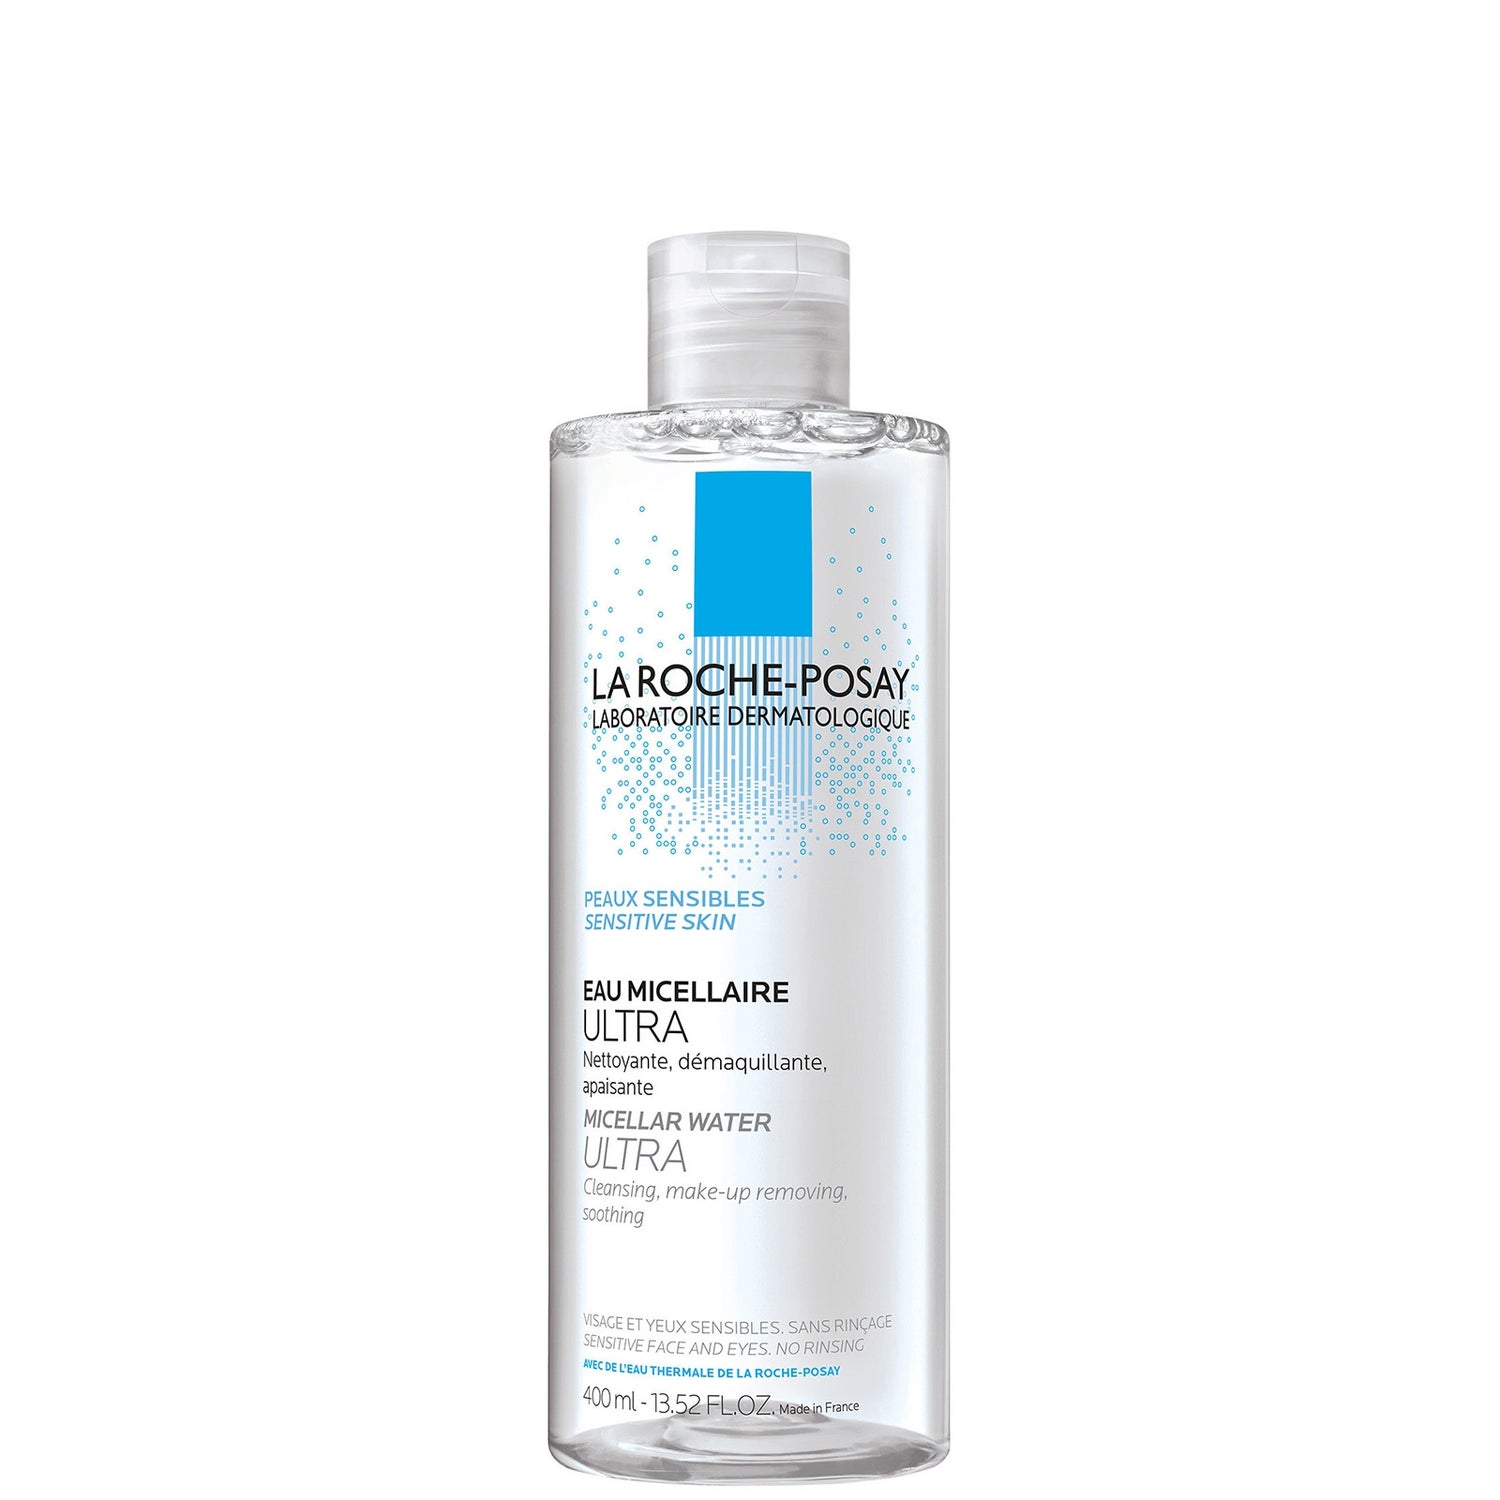 La Roche-Posay Micellar Water Ultra for Sensitive Skin (13.52 fl.oz.)